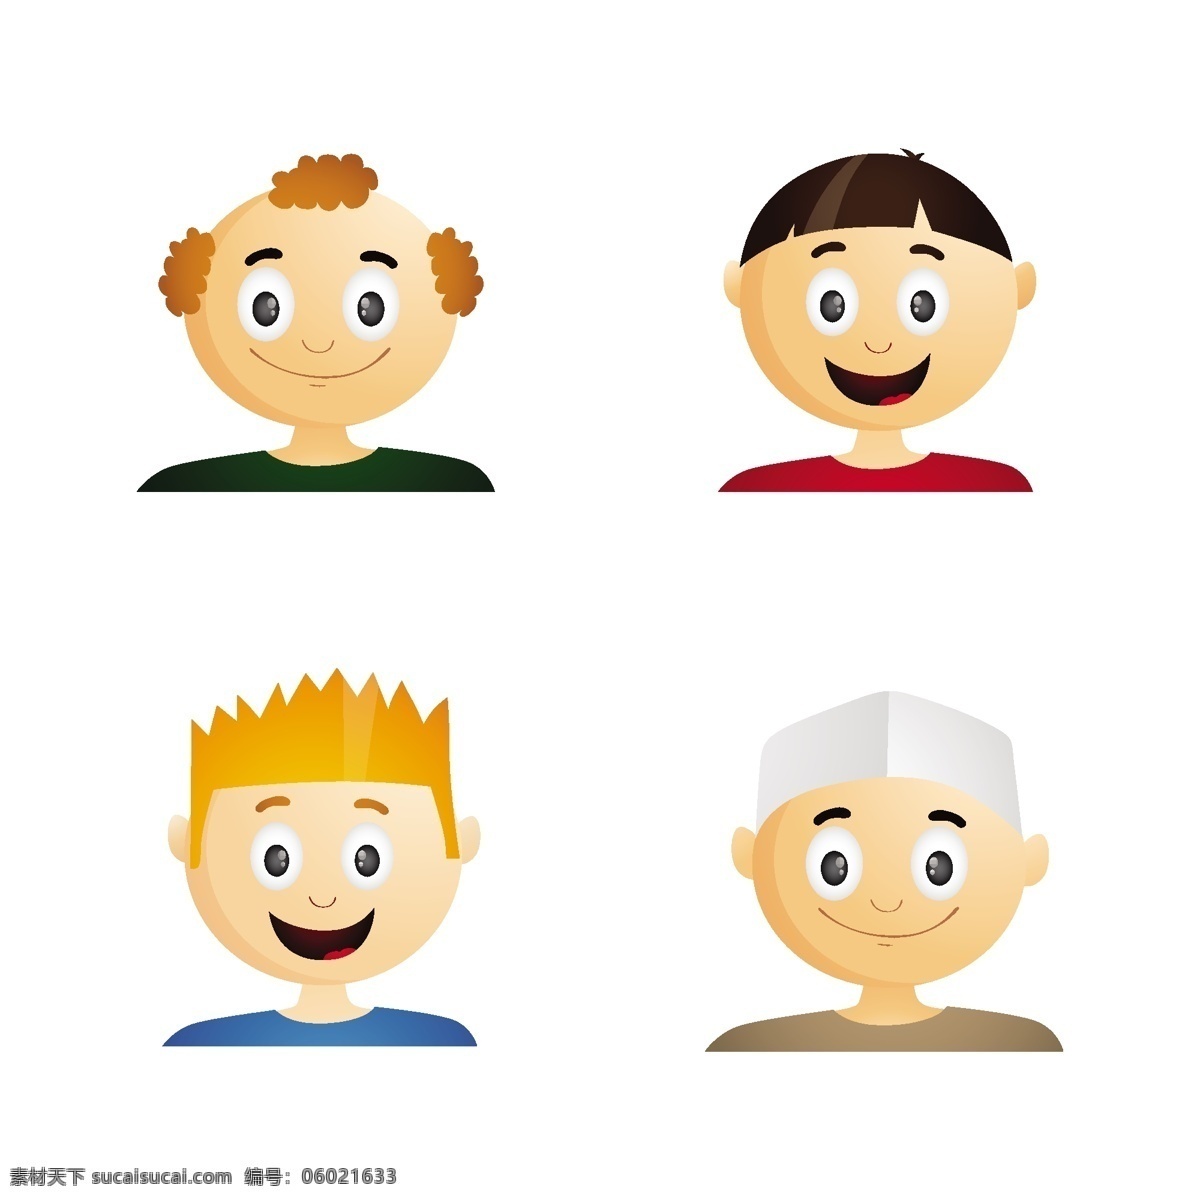 男人的化身 人 卡通 微笑 脸 性格的化身 男人的轮廓 有趣 卡通人物 人物 表情 集 头像 收藏 白色